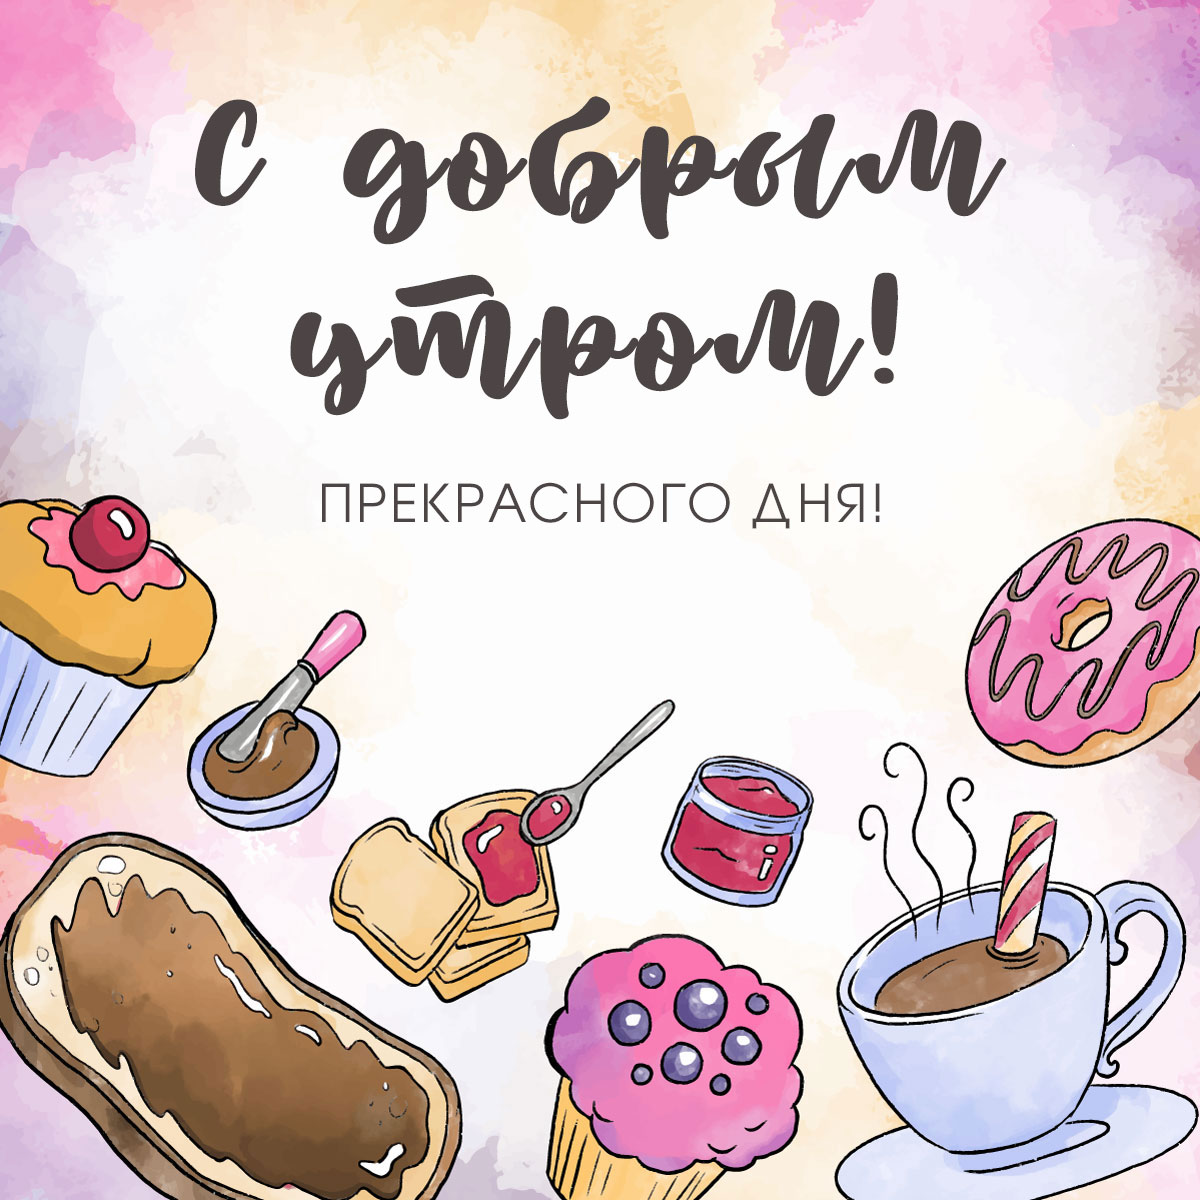 Красочная открытка - рисунок сладостей и столовой посуды с надписью с добрым утром, прекрасного дня!